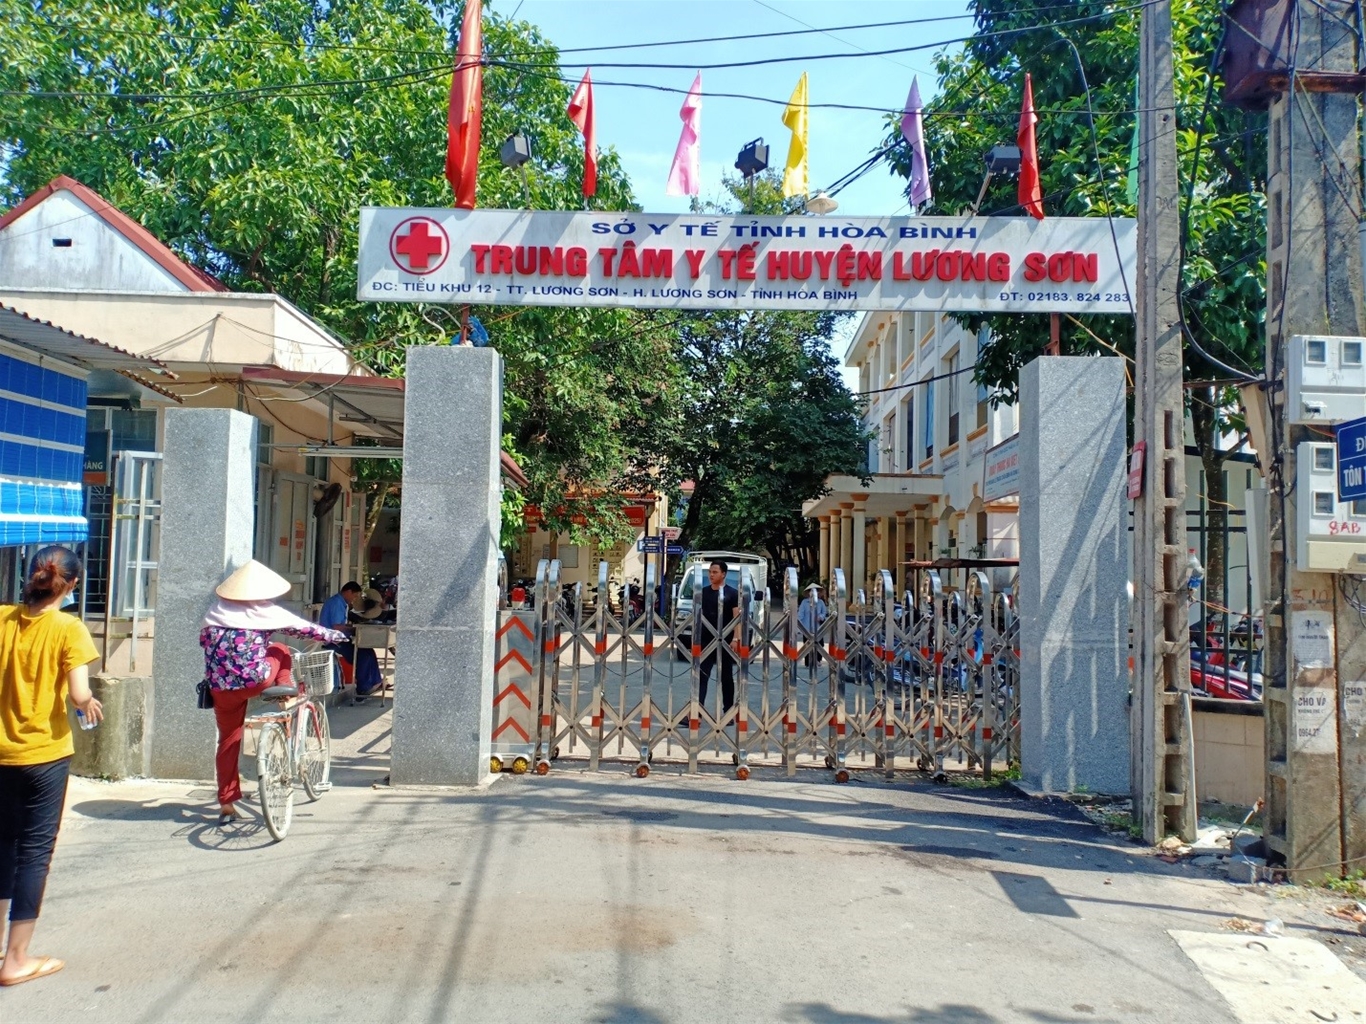 Trung tâm Y tế huyện Lương Sơn: Nỗ lực chăm sóc và nâng cao sức khỏe nhân dân